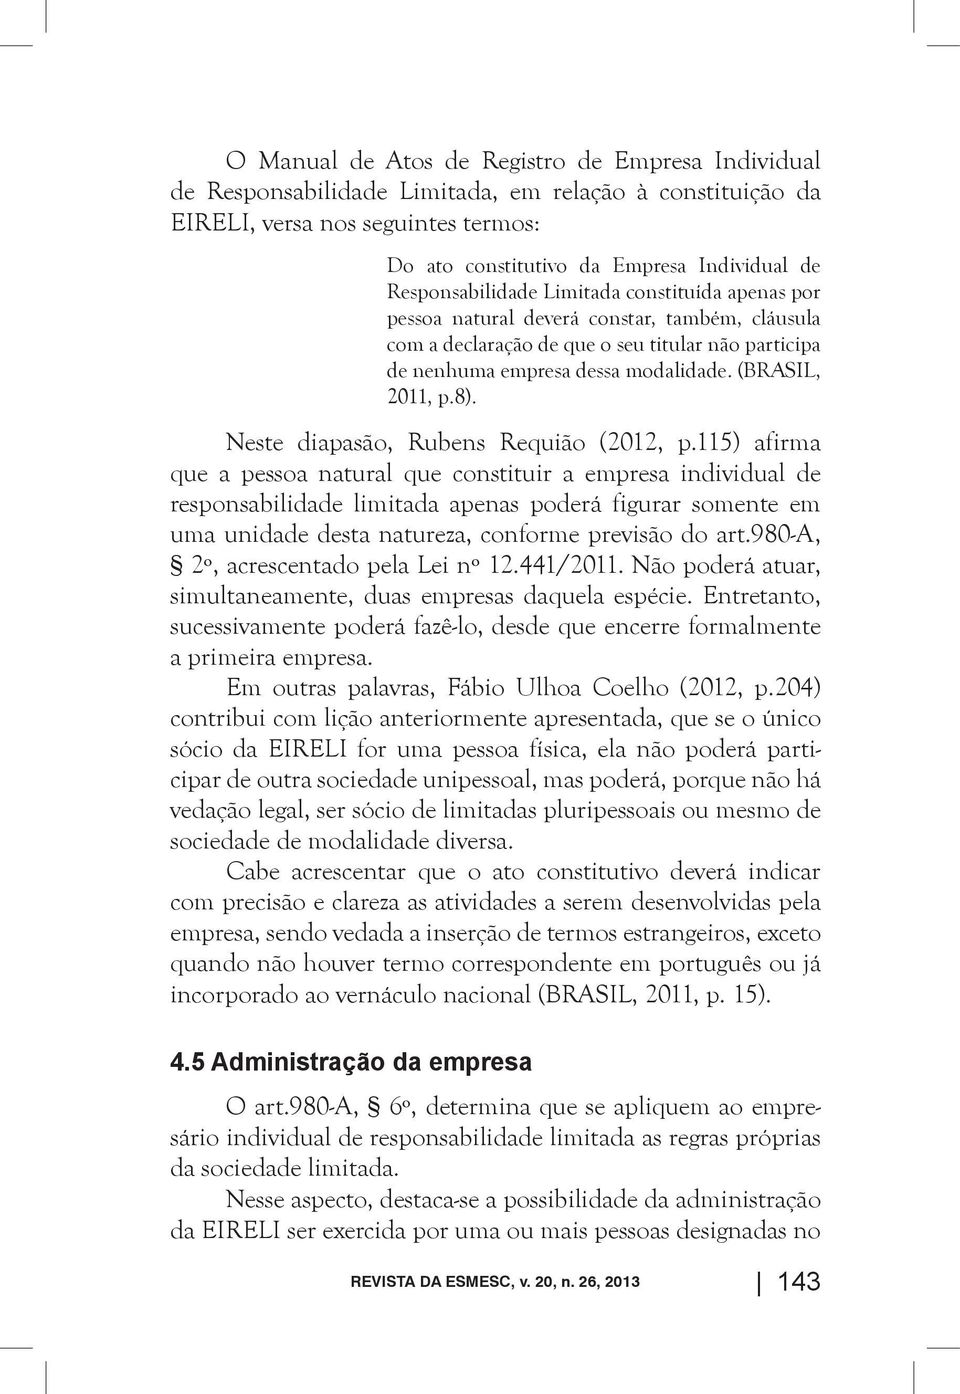 (BRASIL, 2011, p.8). Neste diapasão, Rubens Requião (2012, p.